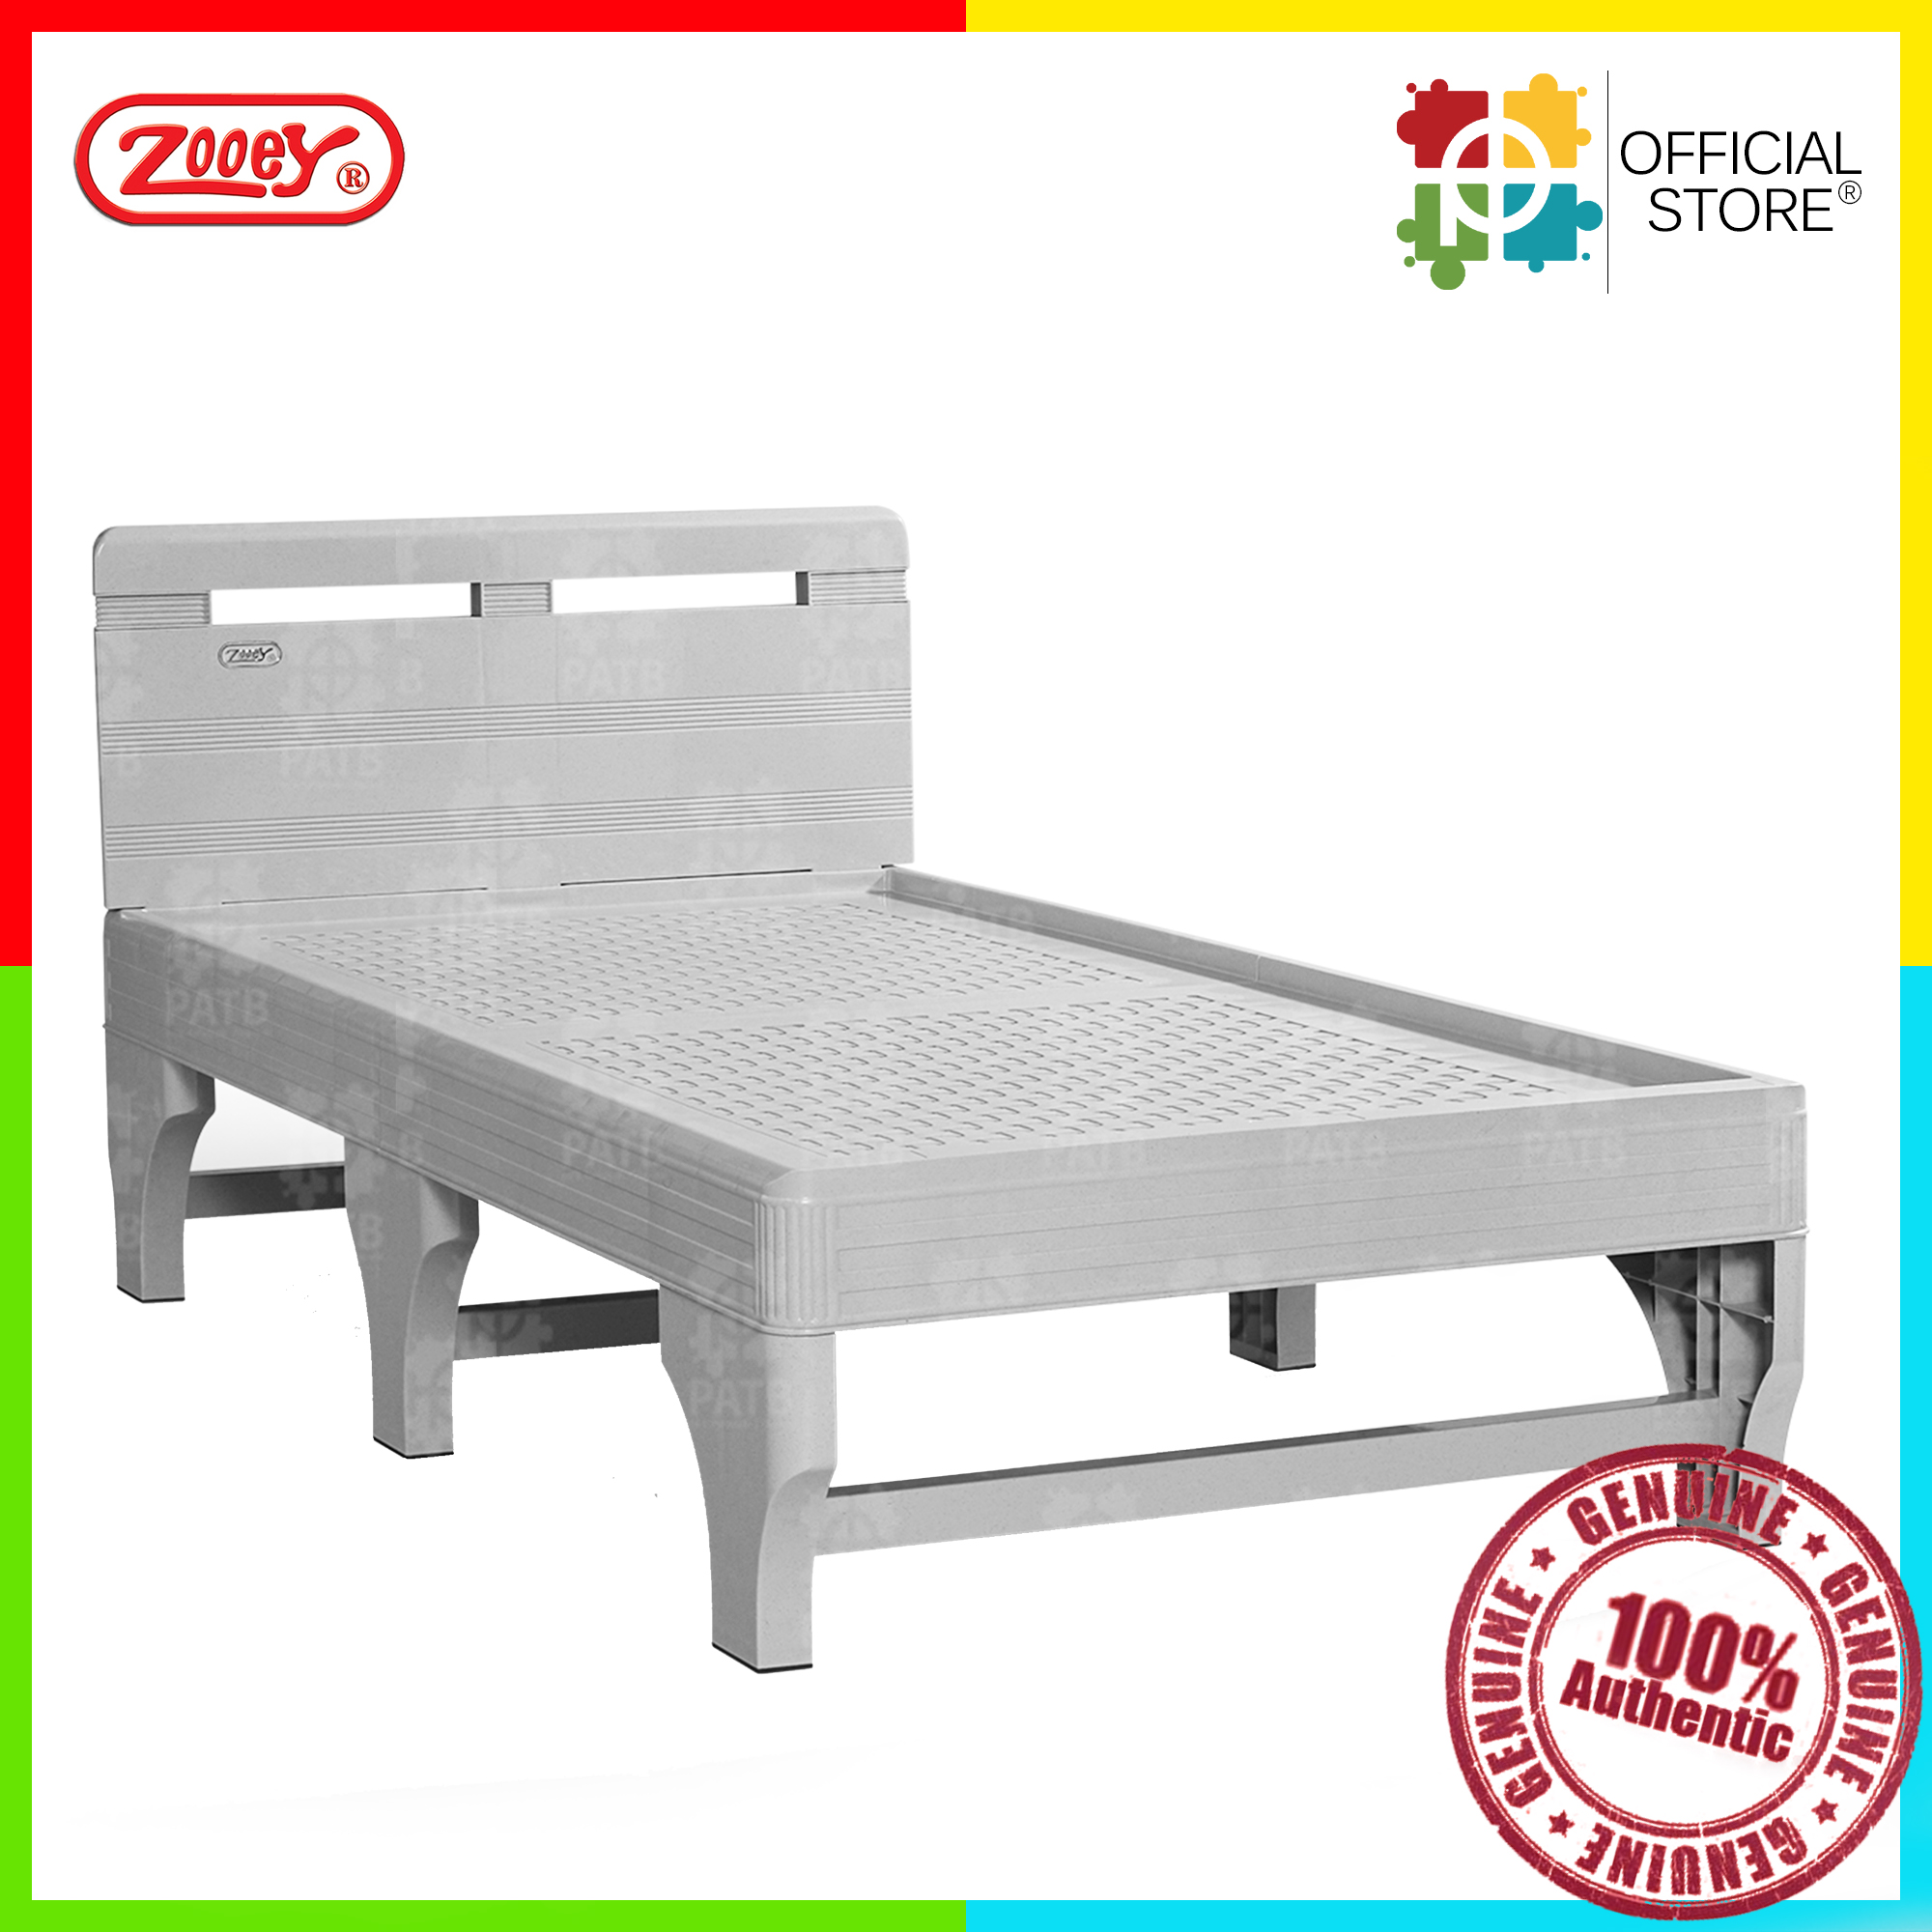 Zooey Cool Comfort 36x75 Bedframe, Zooey Plastic Bed Frame